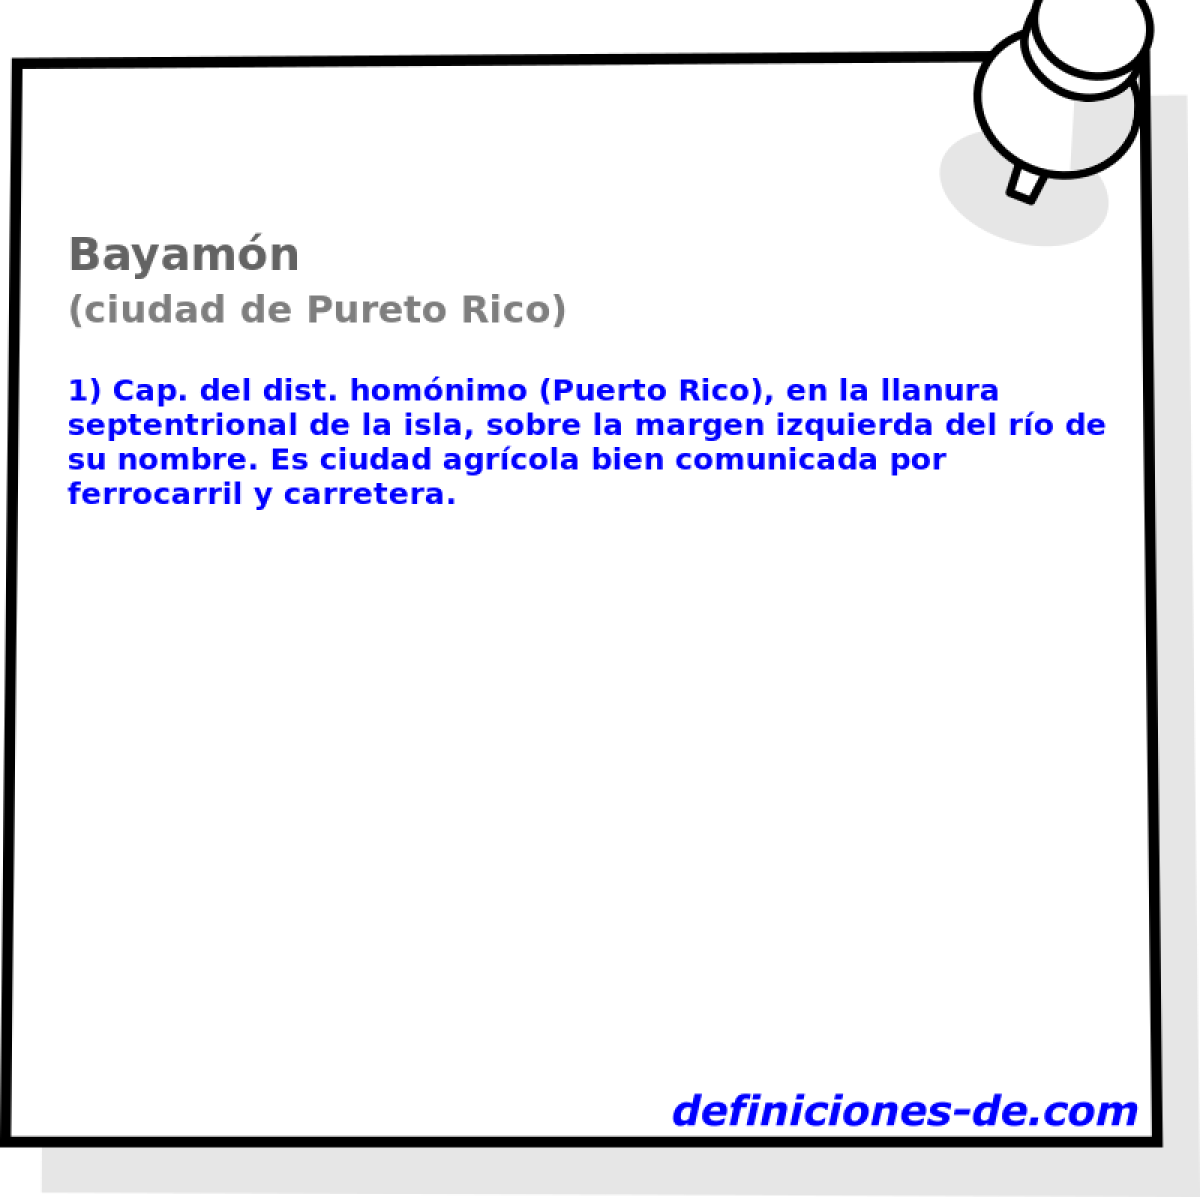 Bayamn (ciudad de Pureto Rico)